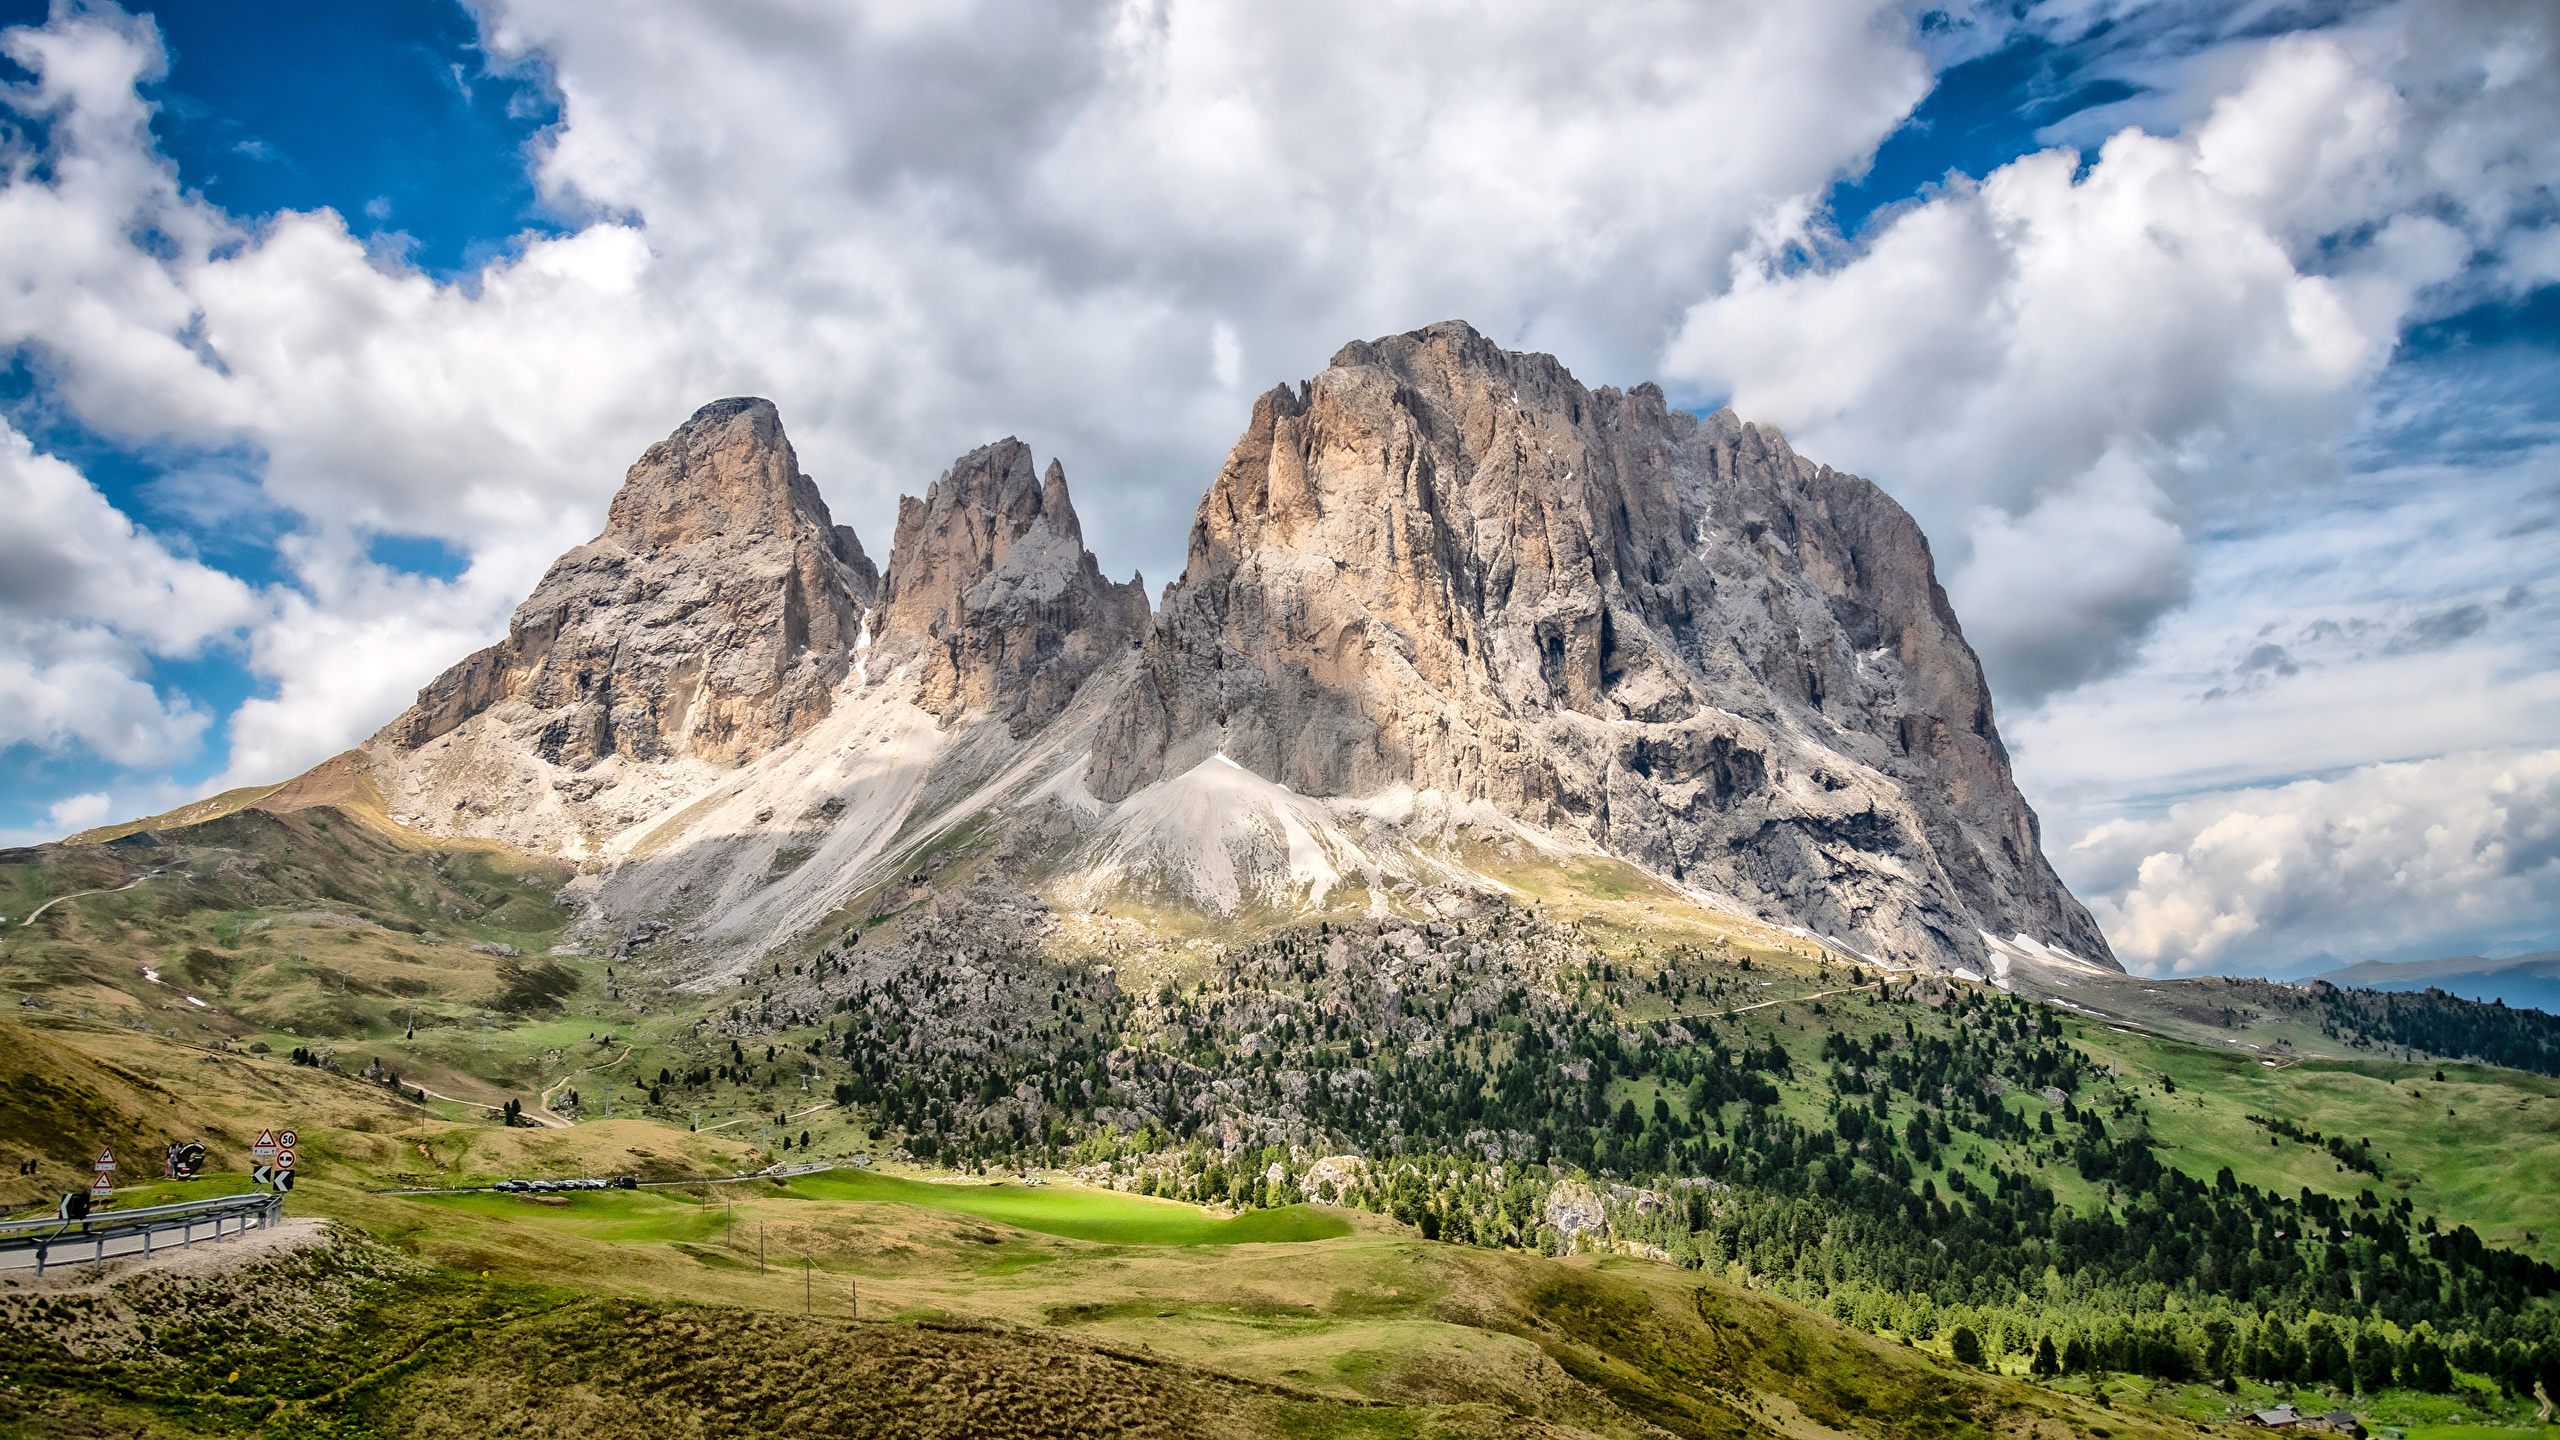 Обои для рабочего стола Альпы Италия Dolomites гора Скала Природа Облака 2560x1440 альп Горы Утес скале скалы облако облачно